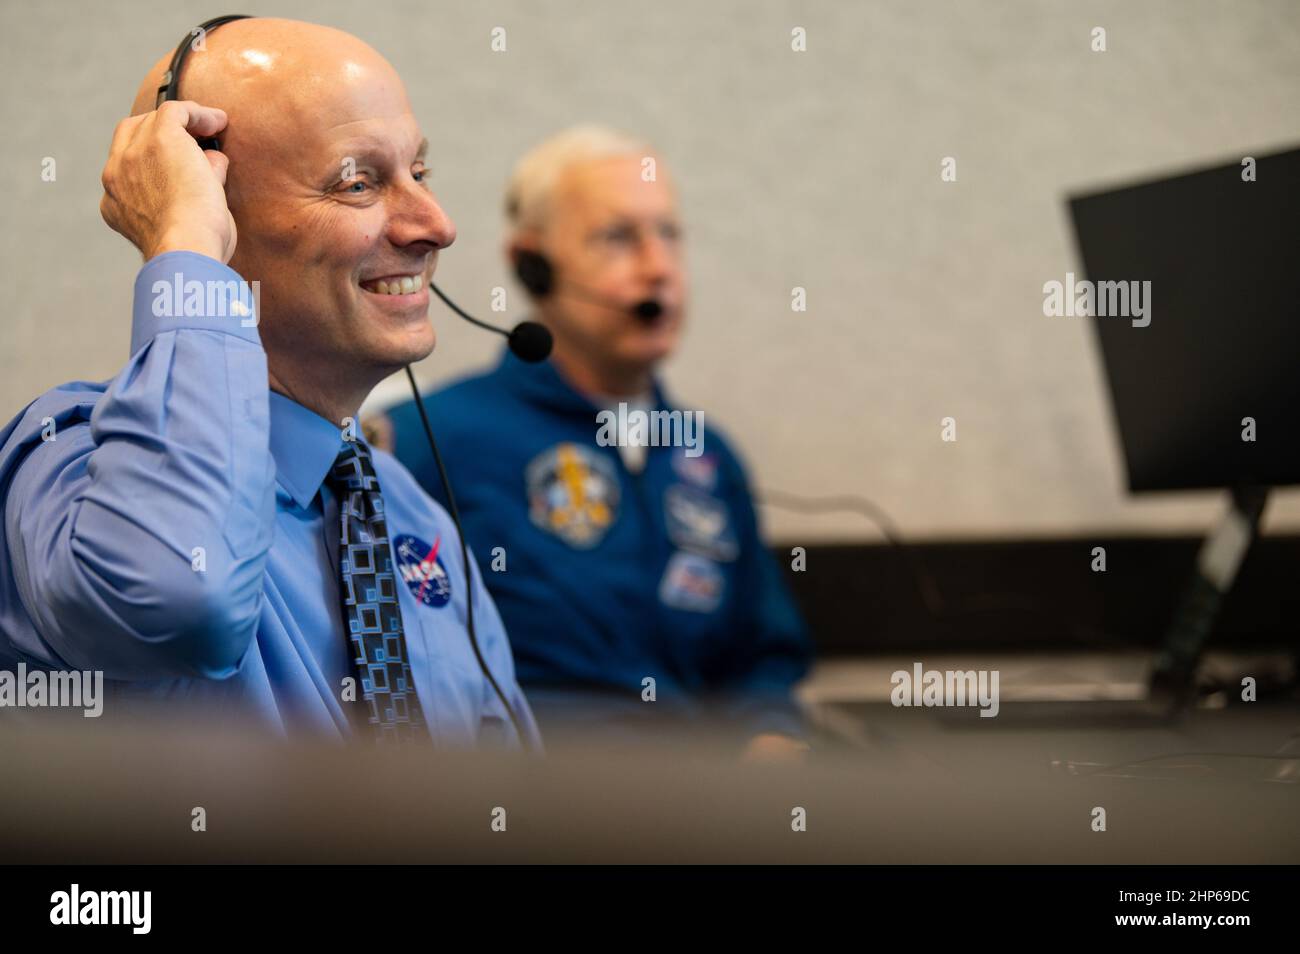 Stephen Koerner, directeur de la Direction des opérations de vol du Johnson Space Center de la NASA, surveille le compte à rebours du lancement d'une fusée SpaceX Falcon 9 transportant le vaisseau spatial Crew Dragon de la compagnie sur la mission SpaceX Crew-1 de la NASA avec les astronautes de la NASA Mike Hopkins, Victor Glover, Shannon Walker, Et l’astronaute de l’Agence japonaise d’exploration aérospatiale (JAXA) Soichi Noguchi, à bord, le dimanche 15 novembre 2020, dans la salle de tir 4 du Launch Control Center du Kennedy Space Center de la NASA, en Floride. Banque D'Images